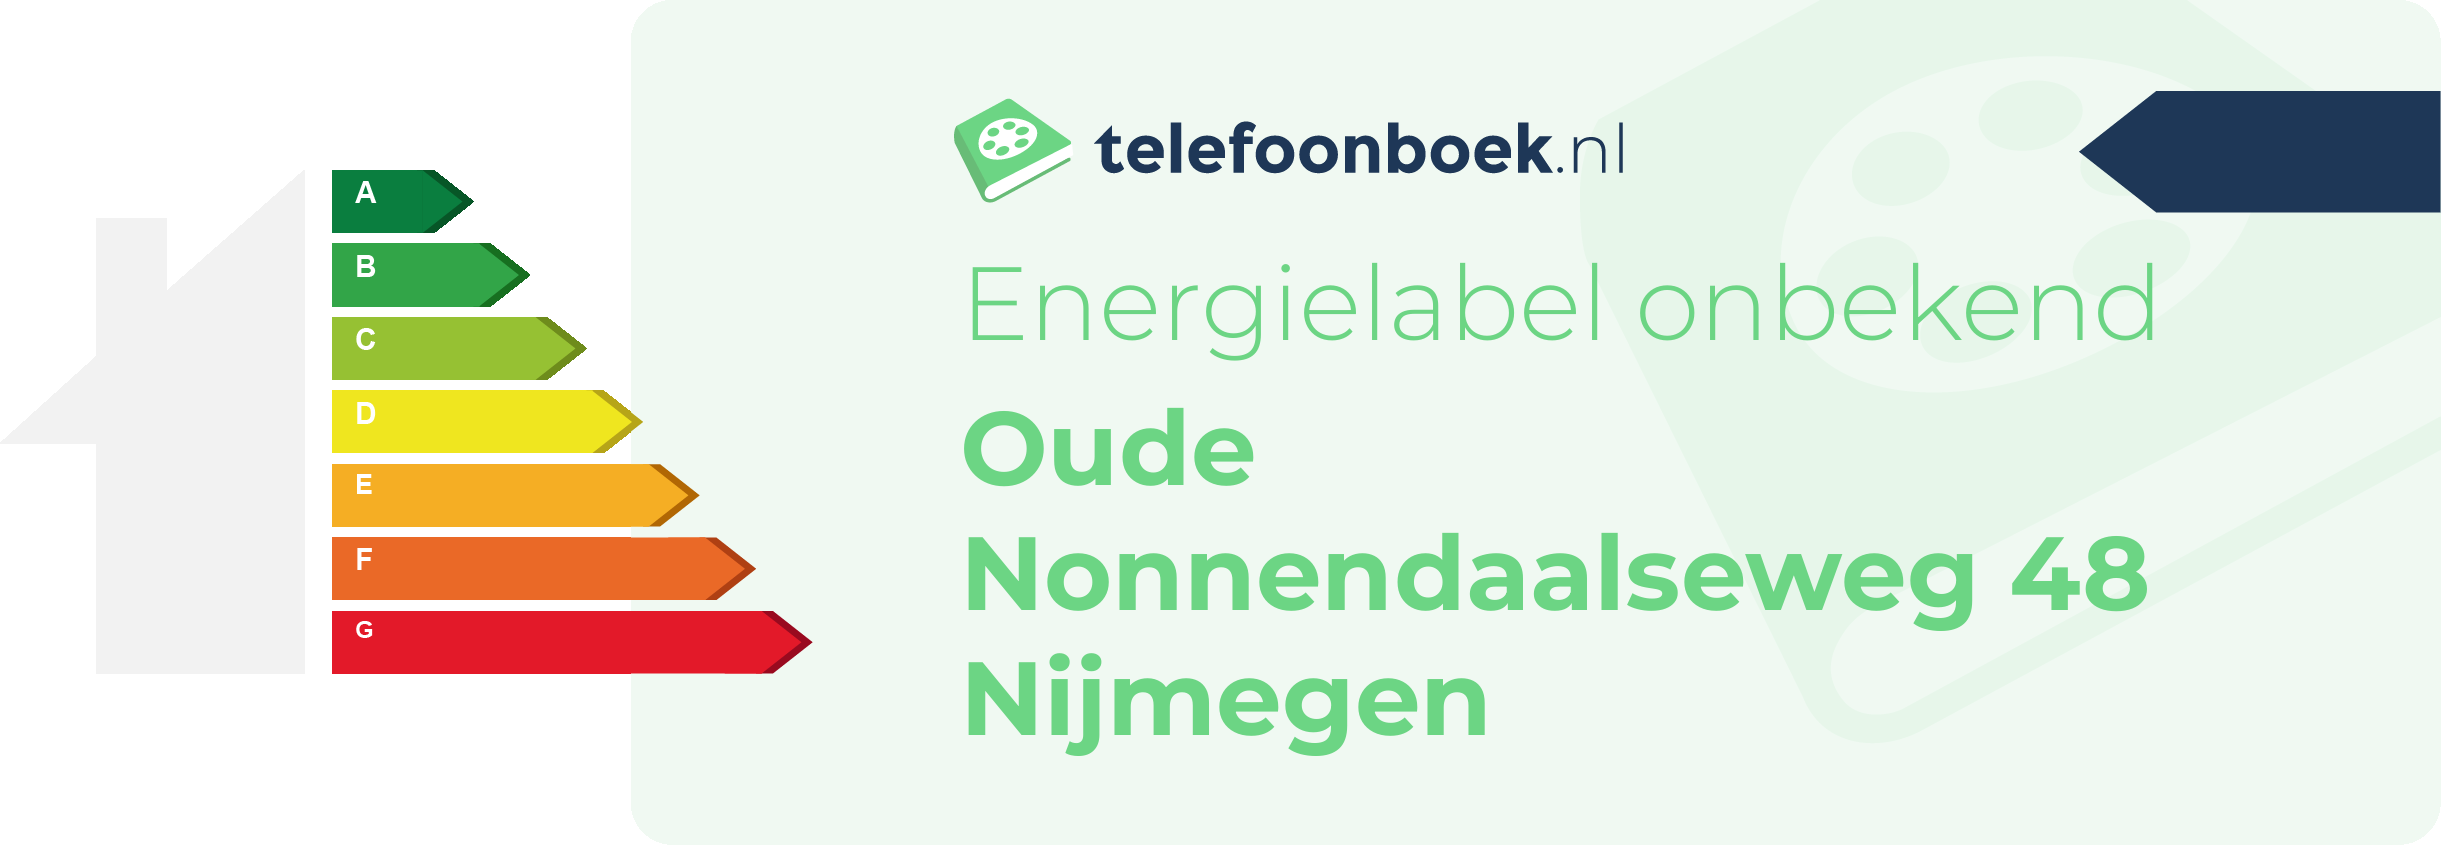 Energielabel Oude Nonnendaalseweg 48 Nijmegen